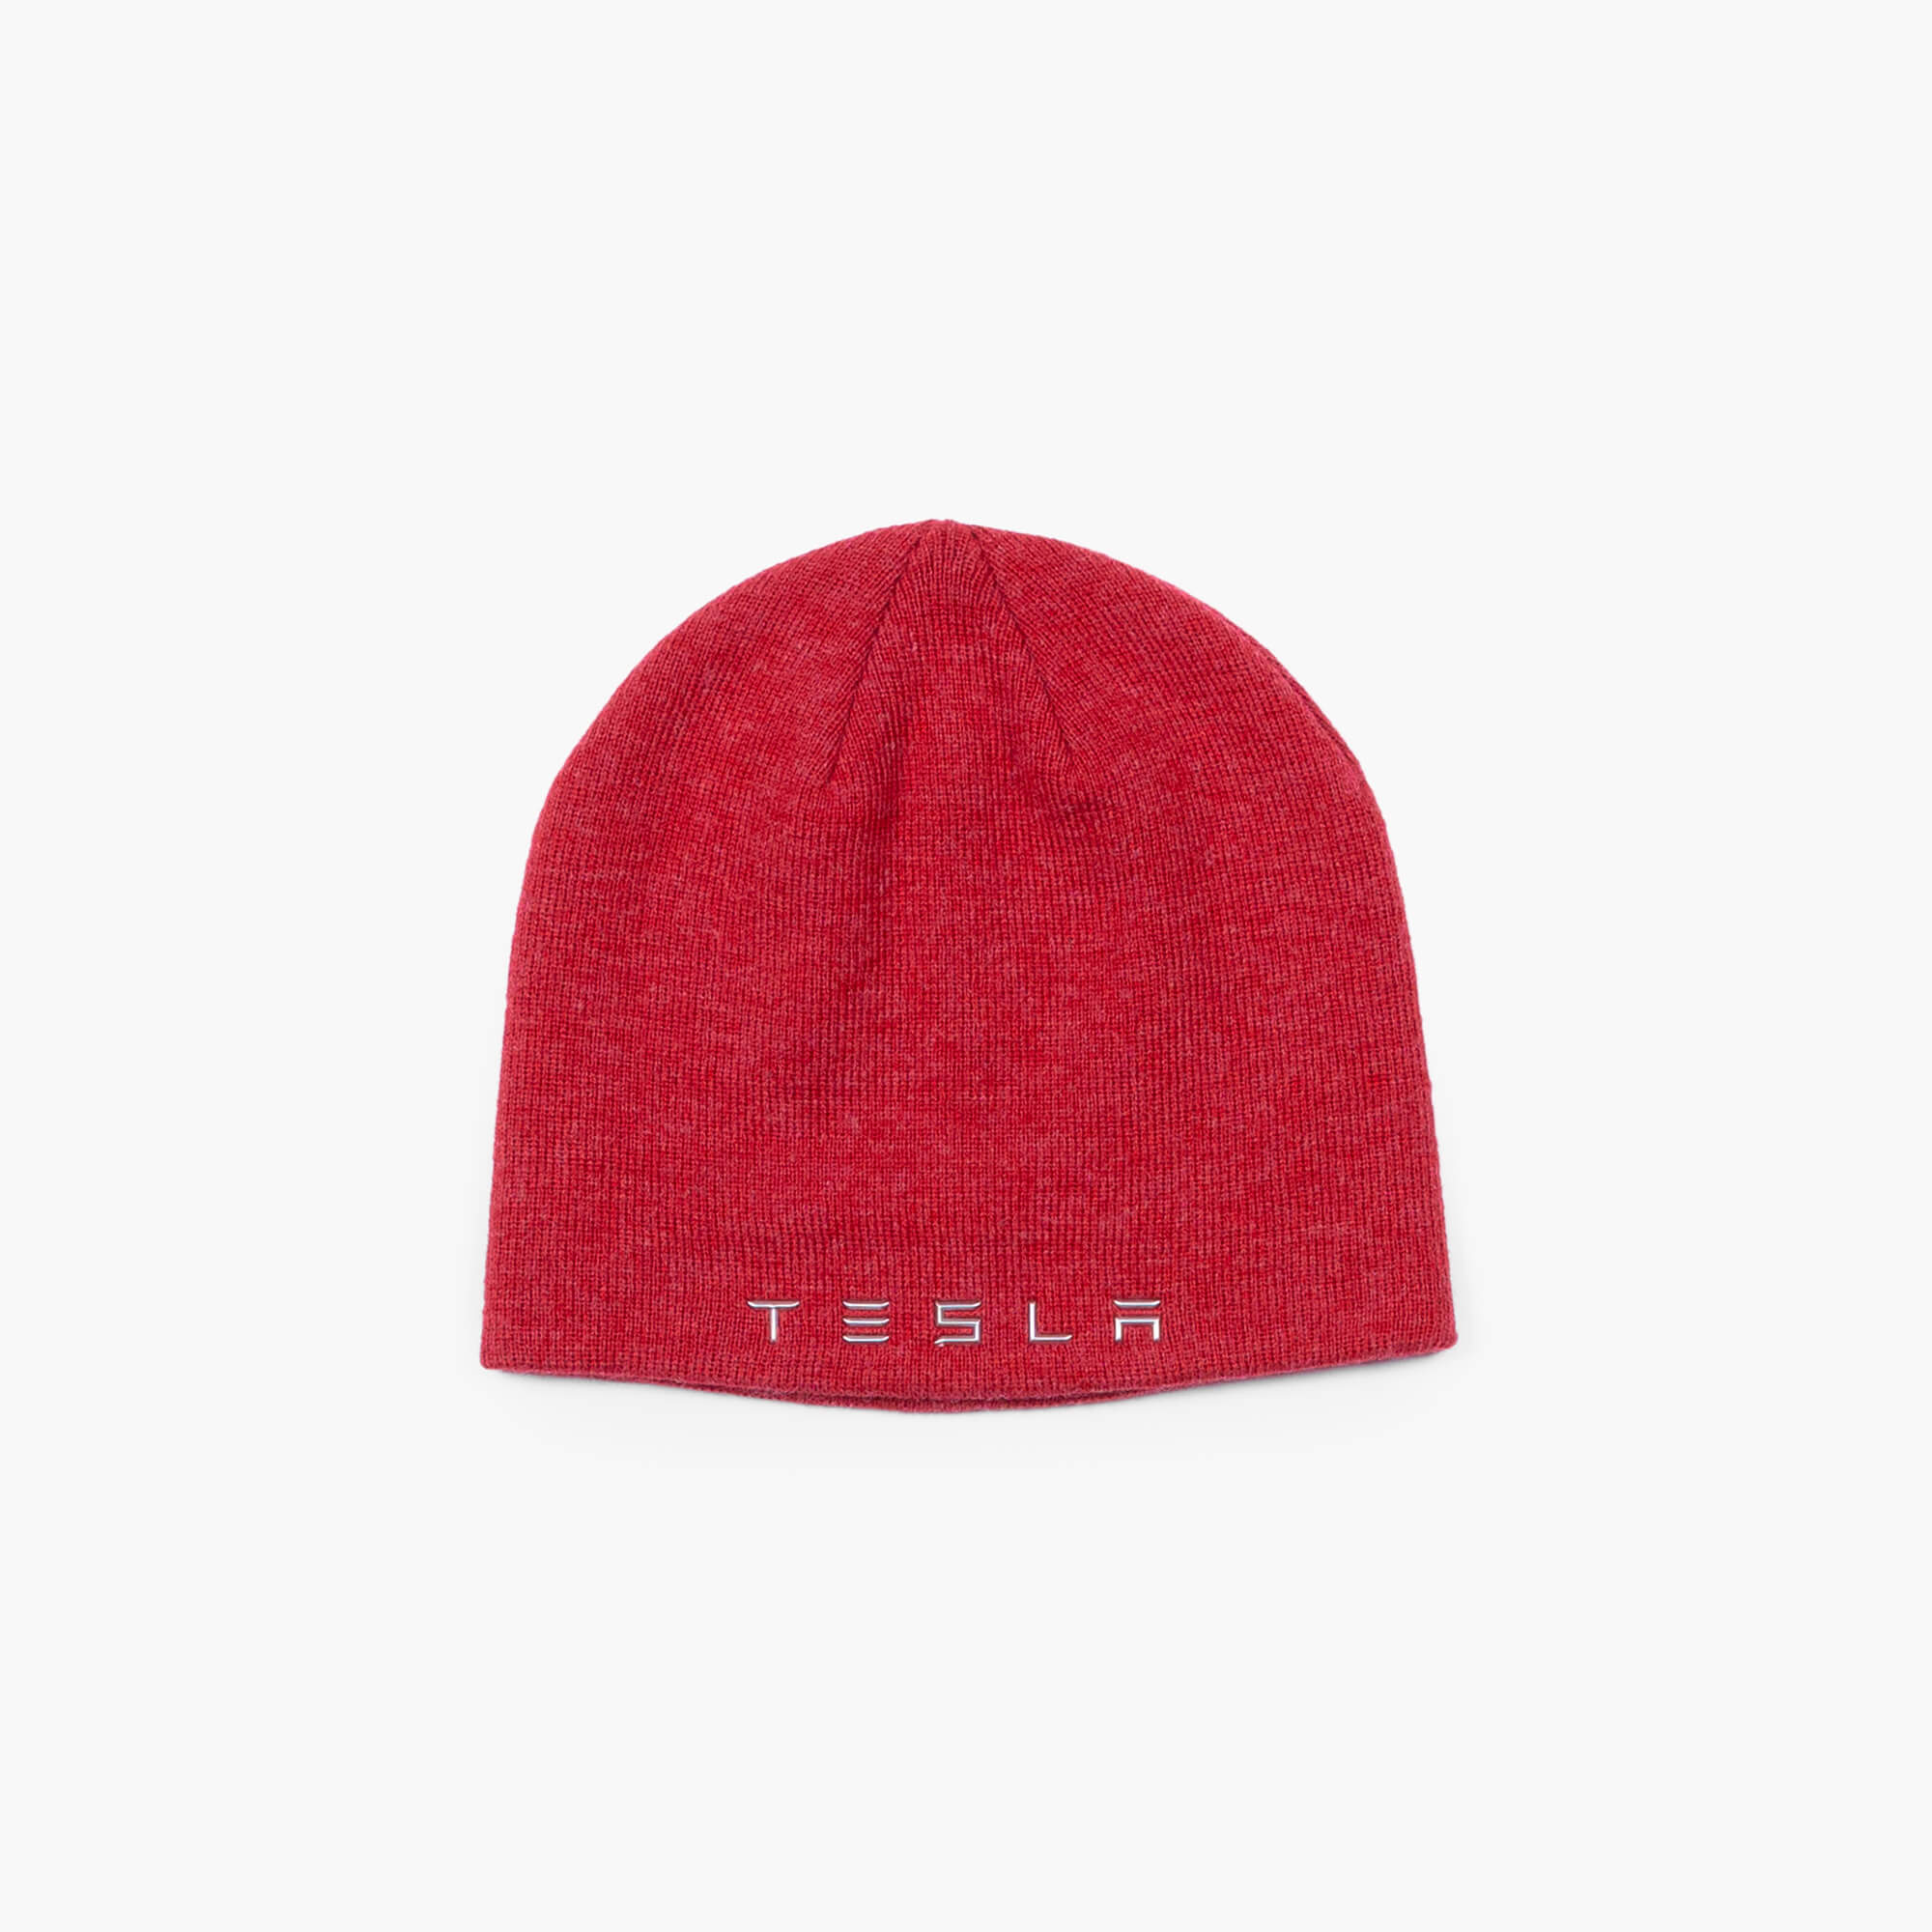 Tesla ワードマーク ニット帽